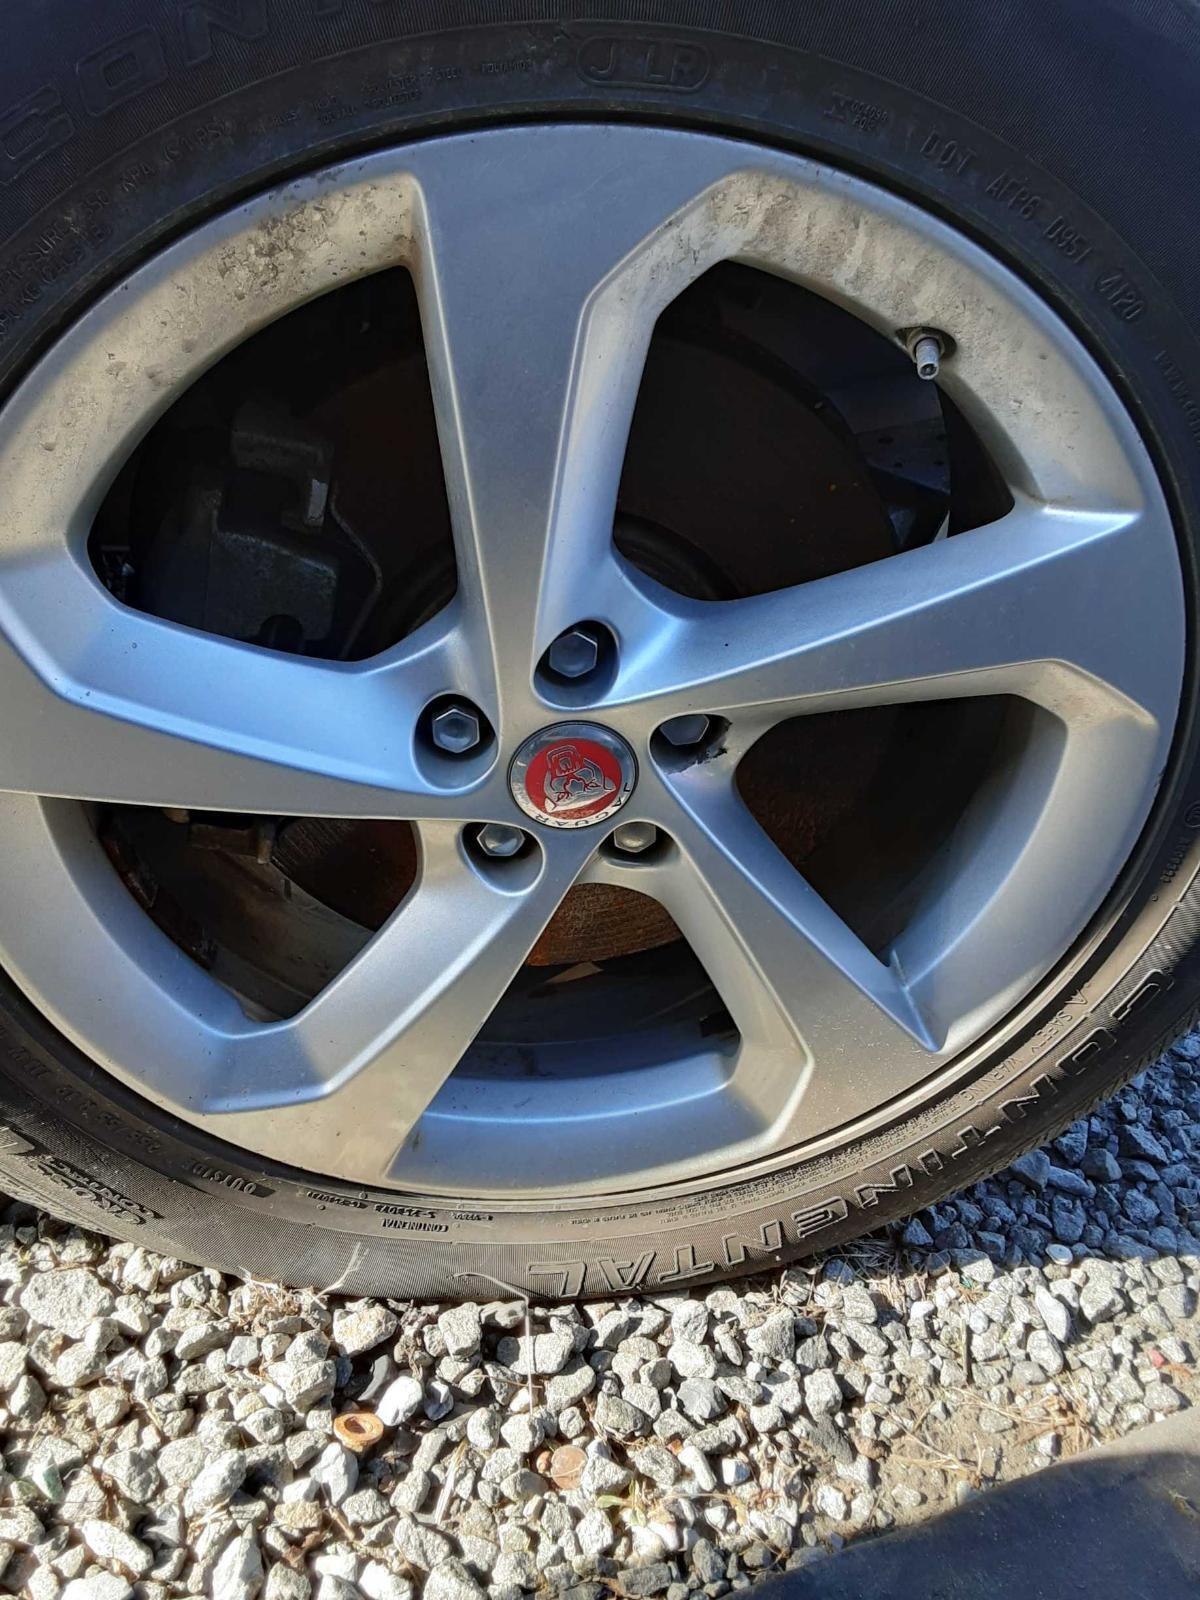 Used Wheel fits: 2017 Jaguar F-pace 19x8-1/2 alloy 5 spoke silver Grade C